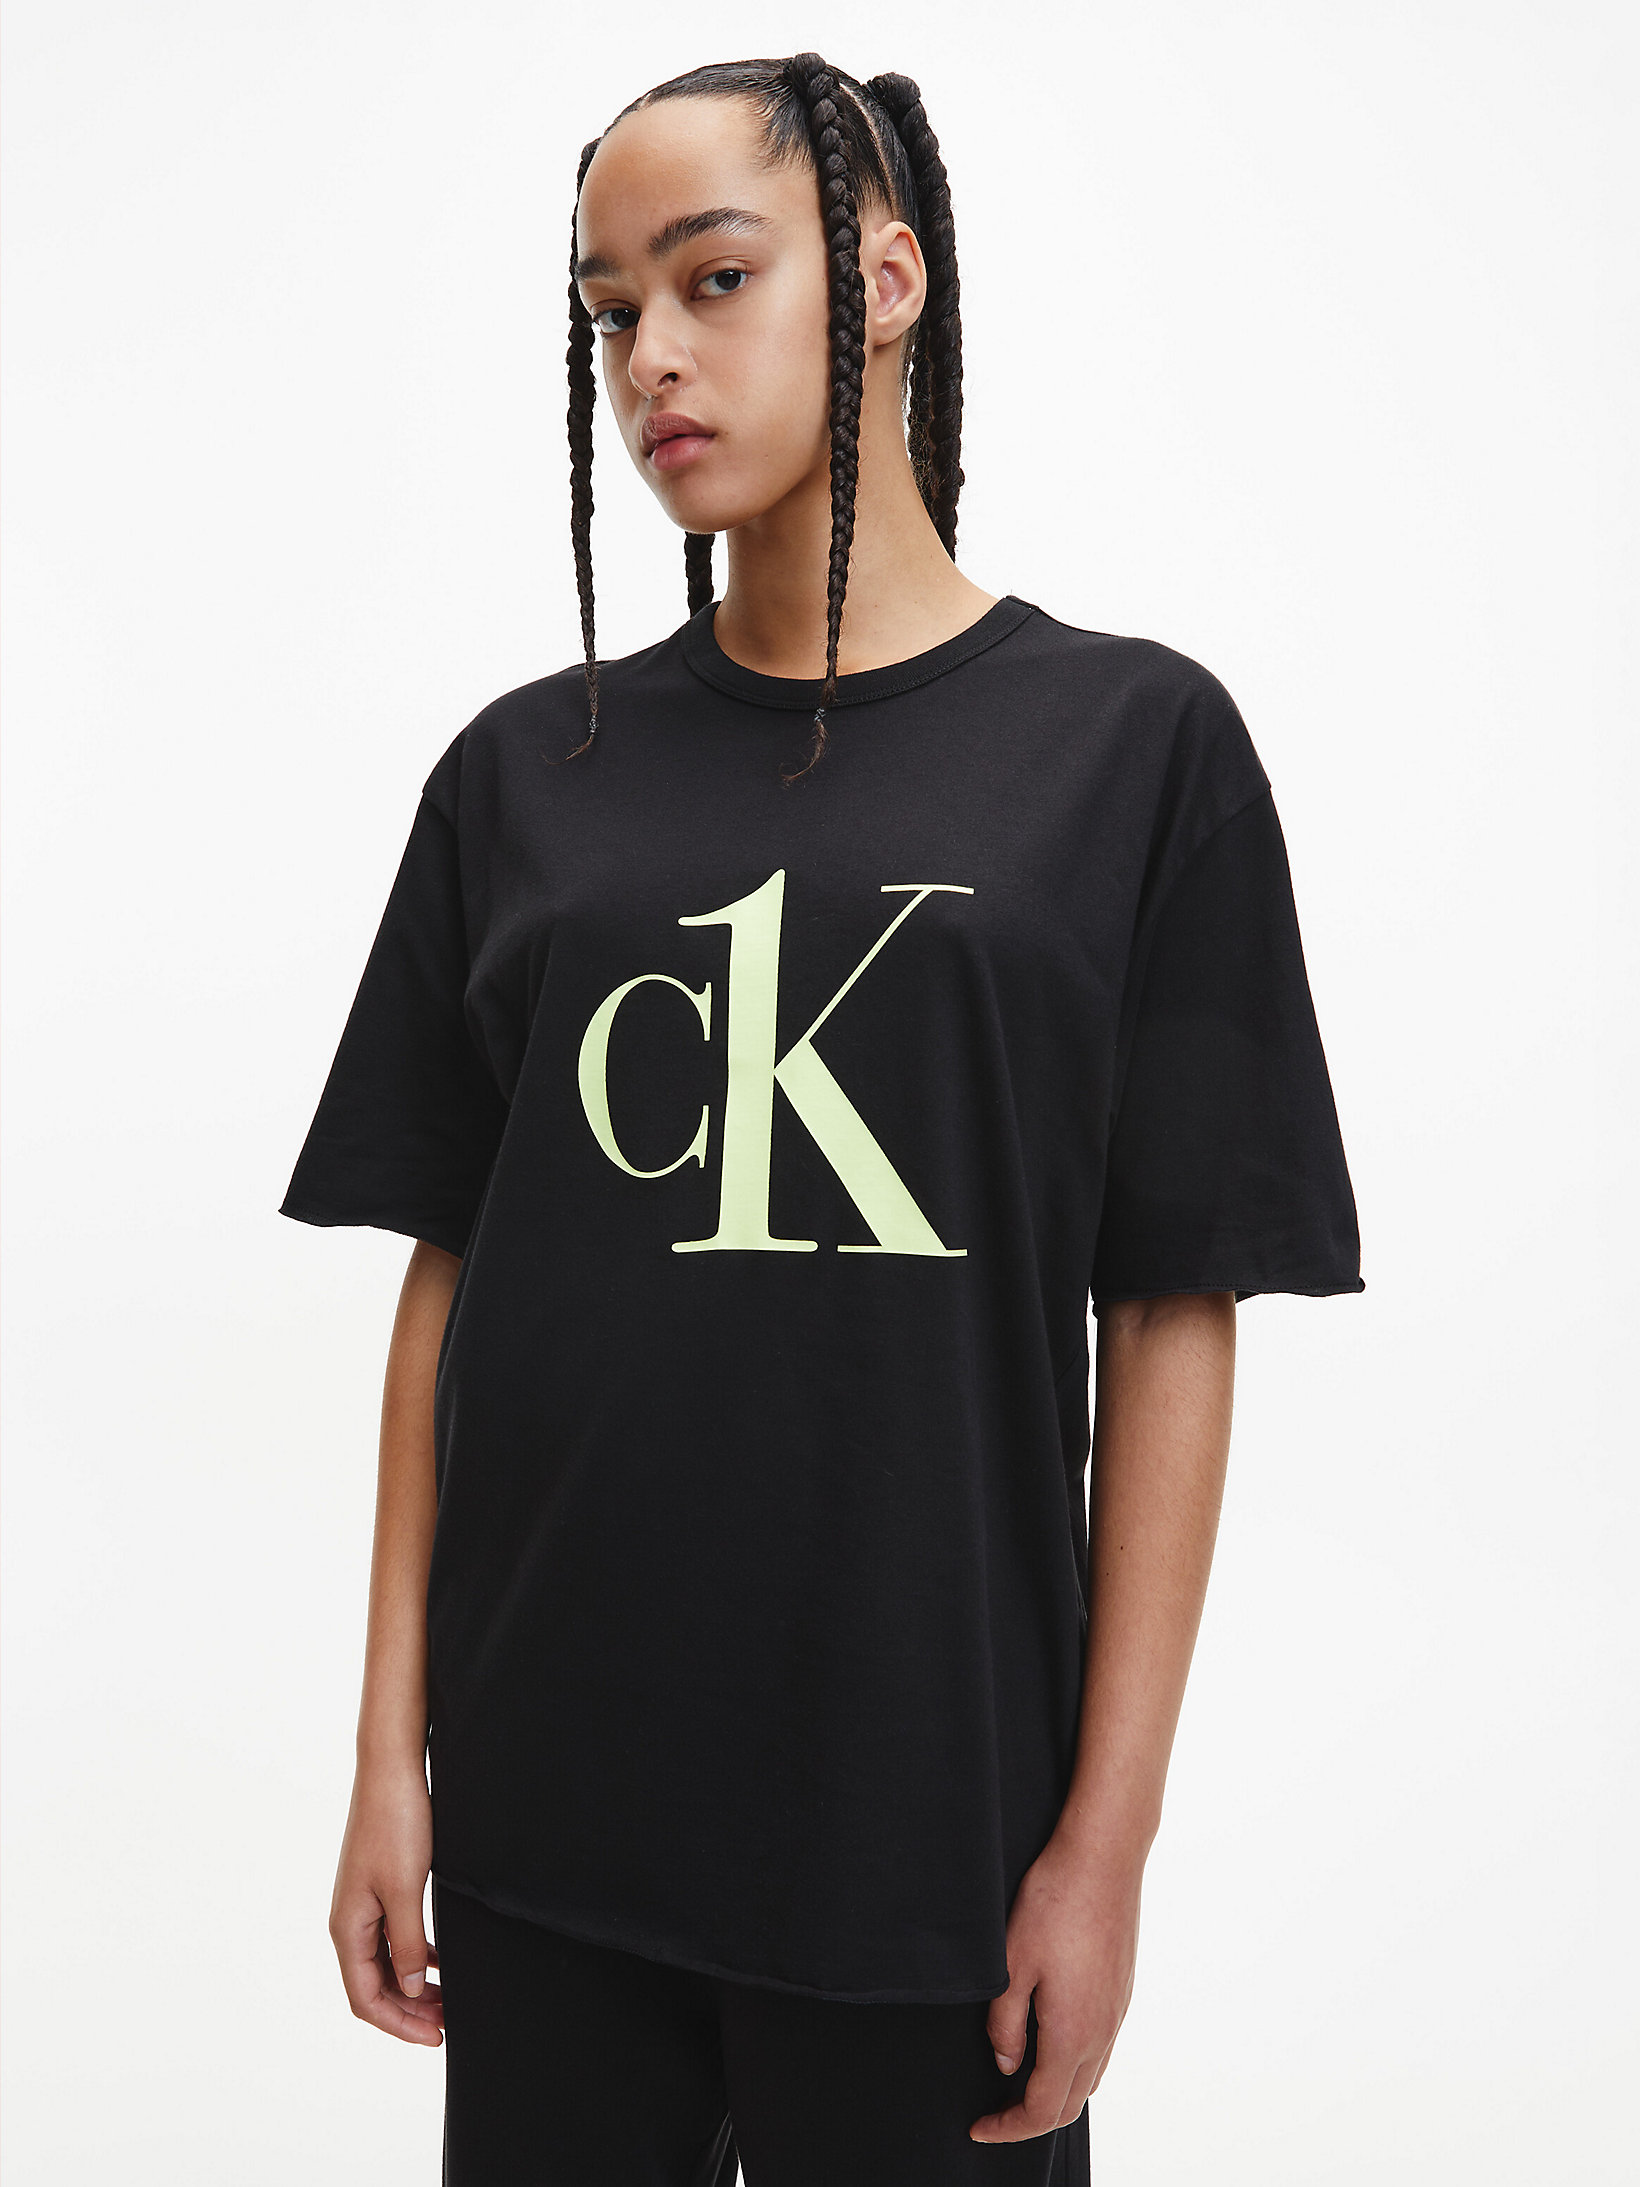 Maglia pigiama CK Black Calvin Klein Uomo Abbigliamento Intimo Magliette intime 